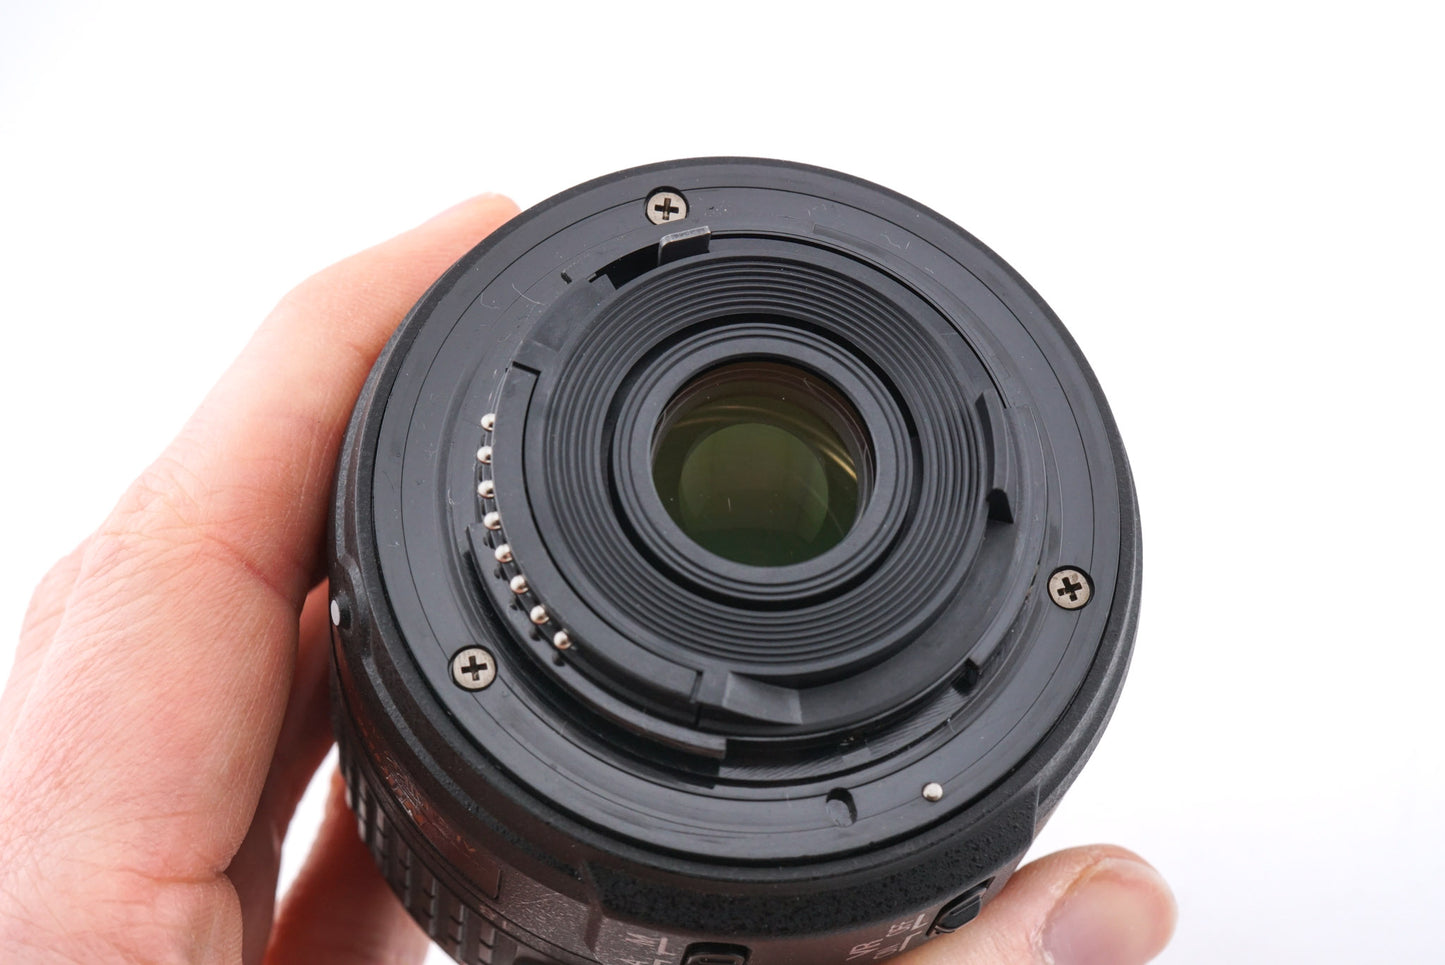 Nikon 18-55mm f3.5-5.6 AF-S Nikkor G II VR